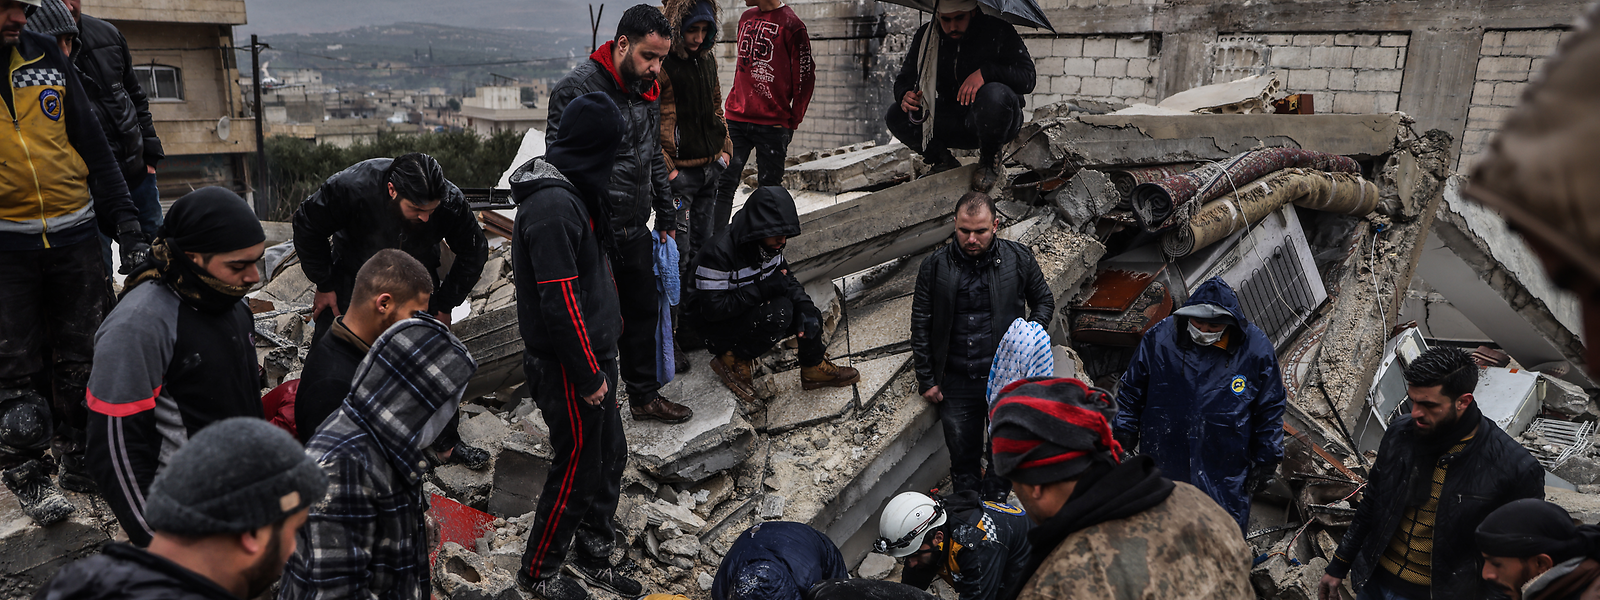 Syrische Zivilisten und Mitglieder der Weißhelme arbeiten an der Rettung von Menschen, die nach dem Erdbeben in Idlib unter einem zerstörten Gebäude eingeschlossen sind. Die bereits zuvor durch den Bürgerkrieg in weiten Teilen zerstörte Stadt ist zu einer einzigen Trümmerwüste geworden.